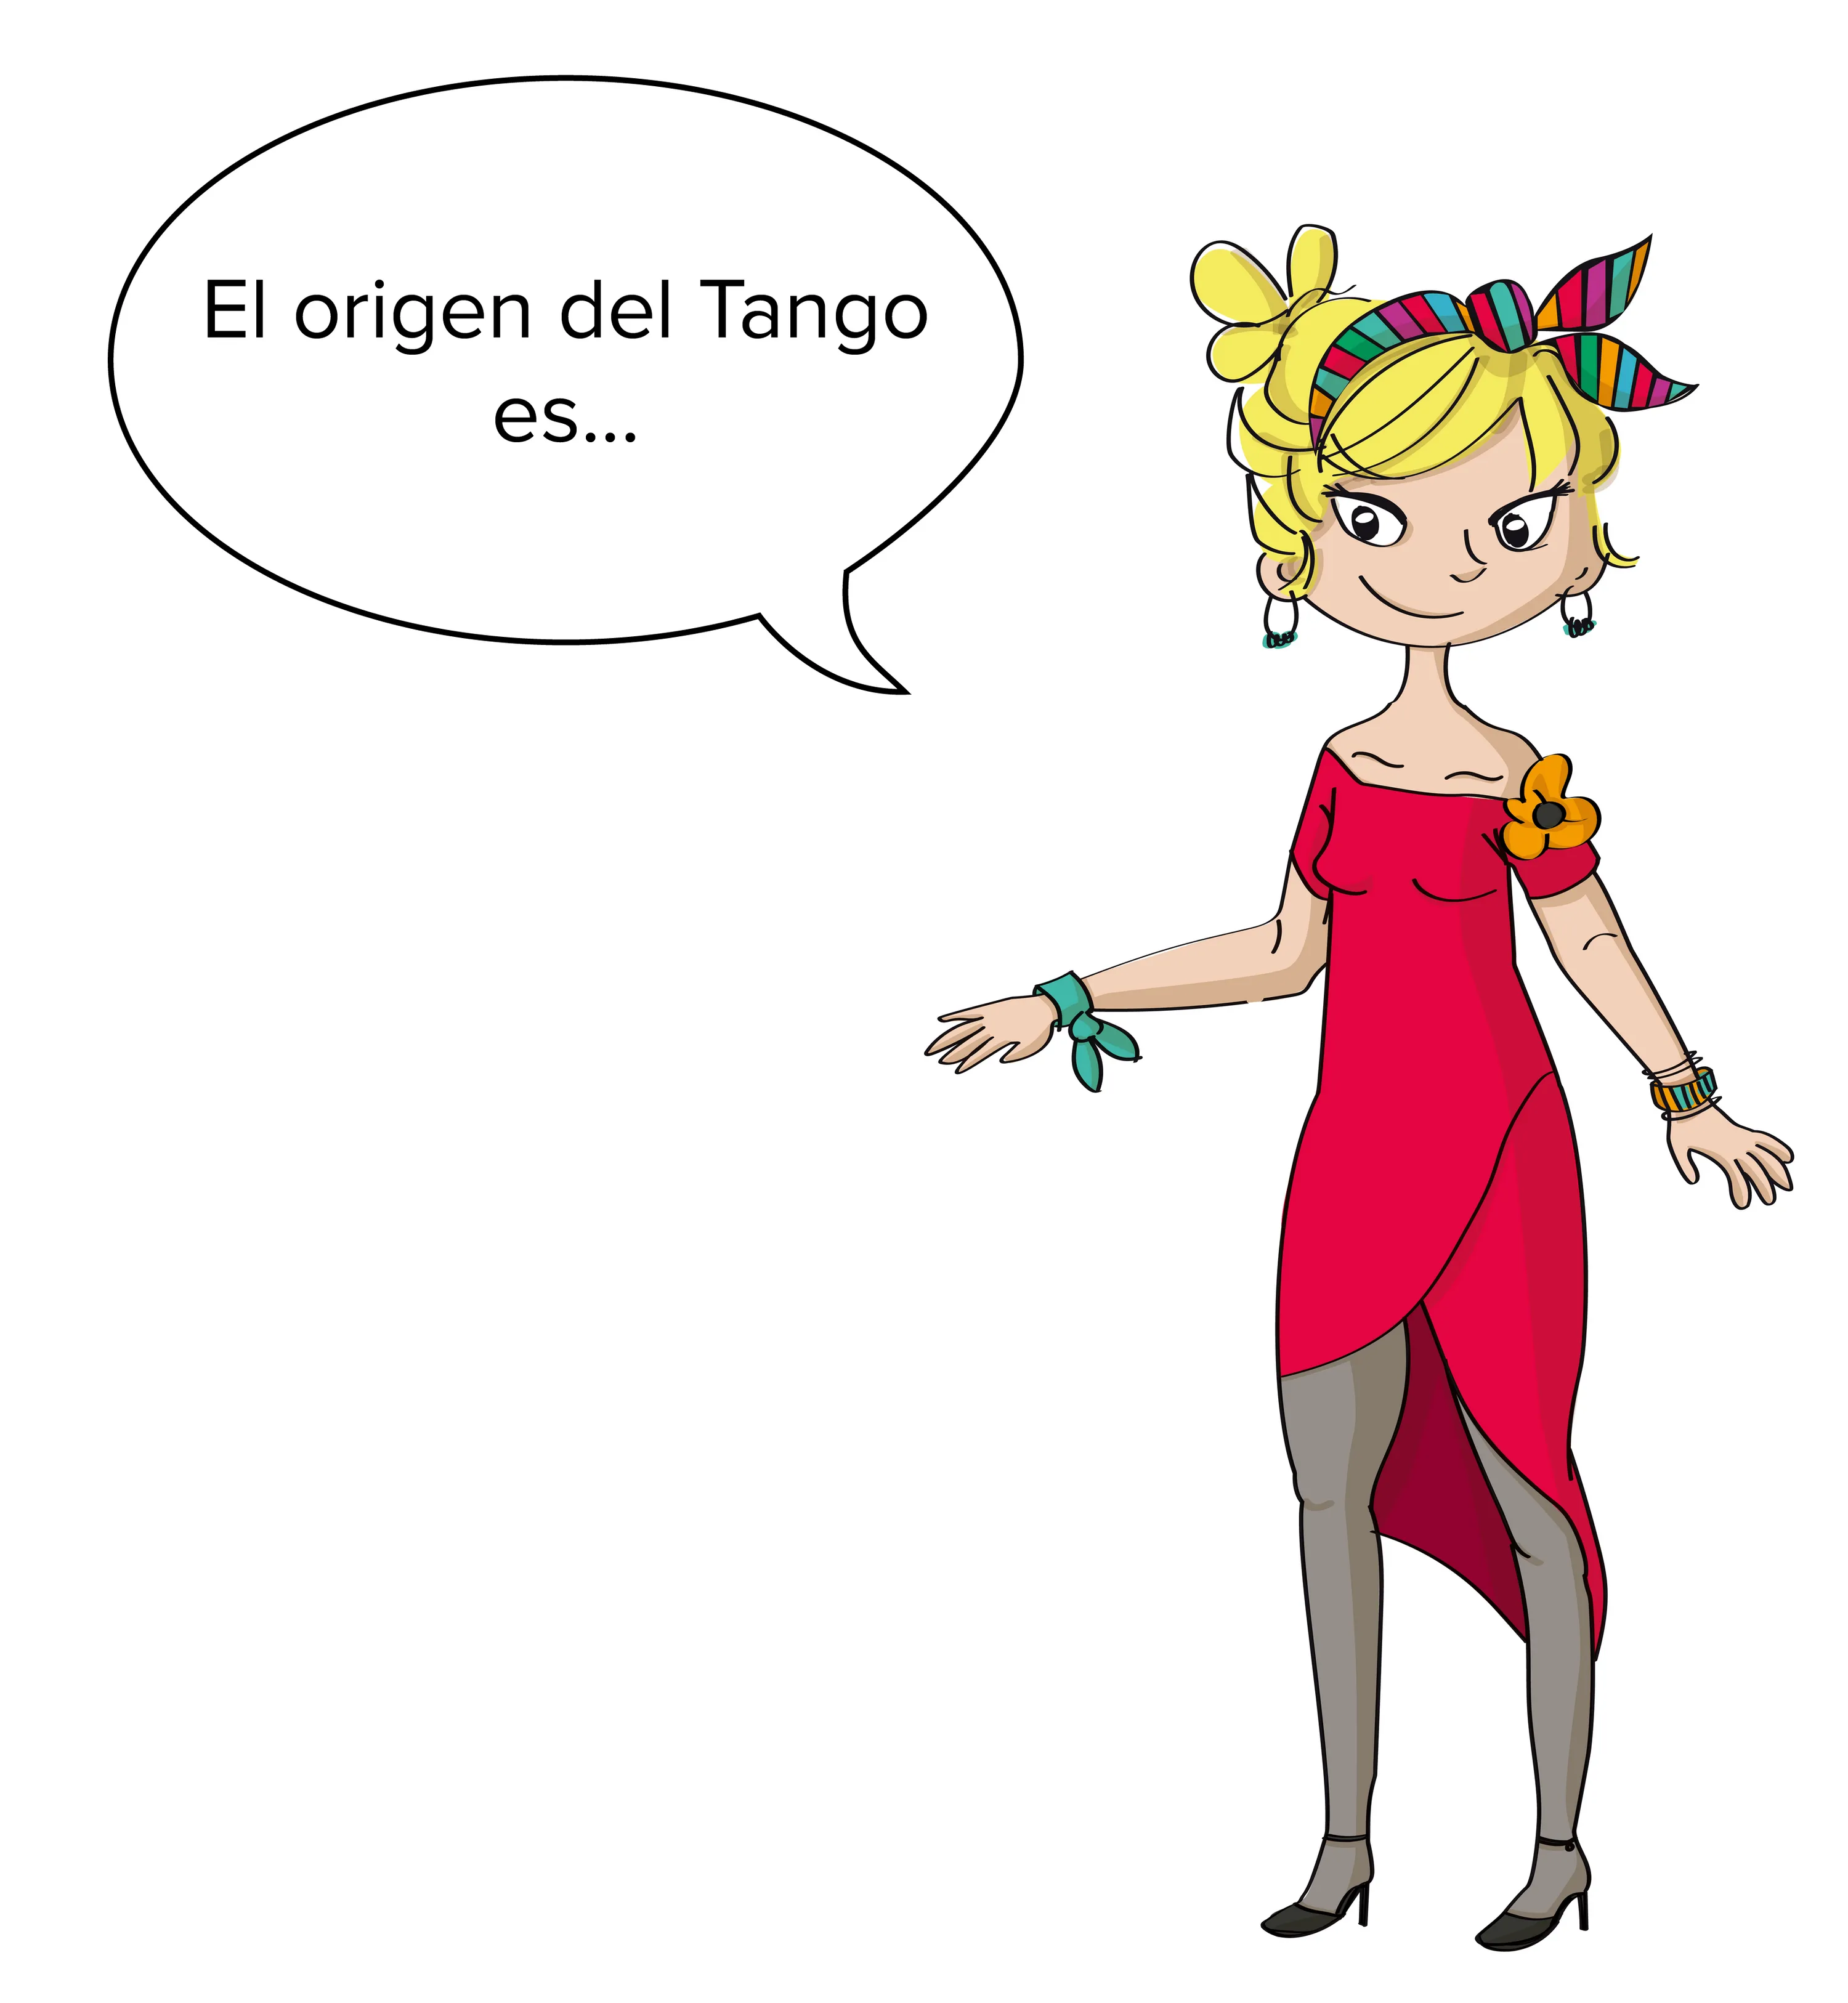 El origen del Tango es...